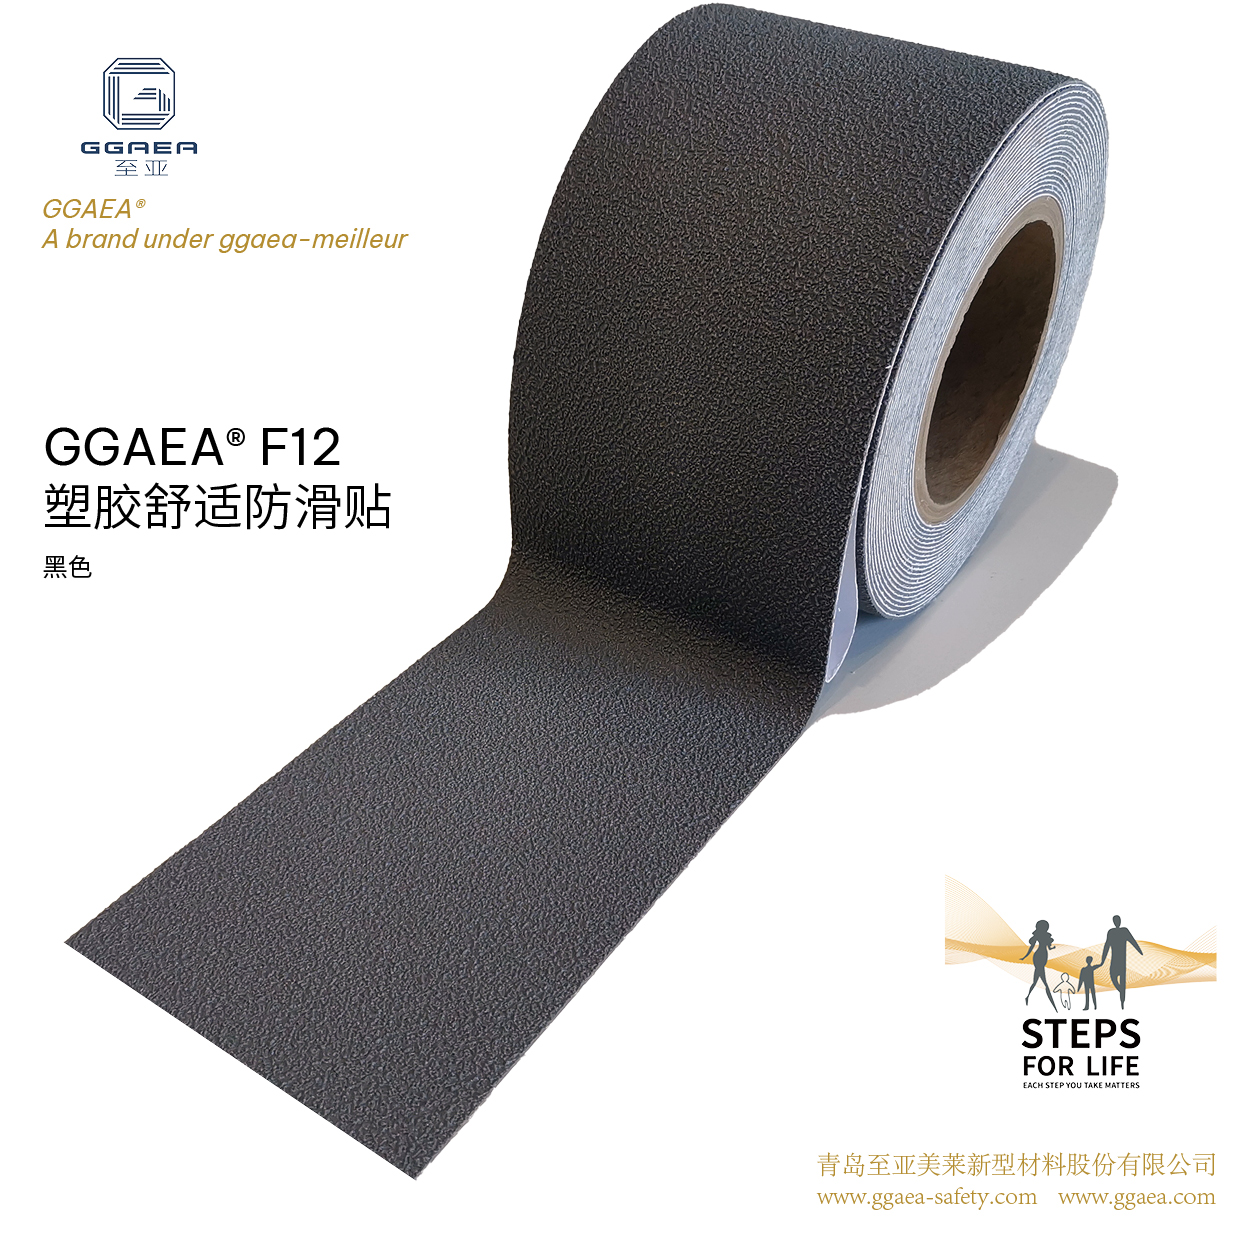 至亚™ GGAEA™ F12 黑色 塑胶粒子防滑贴